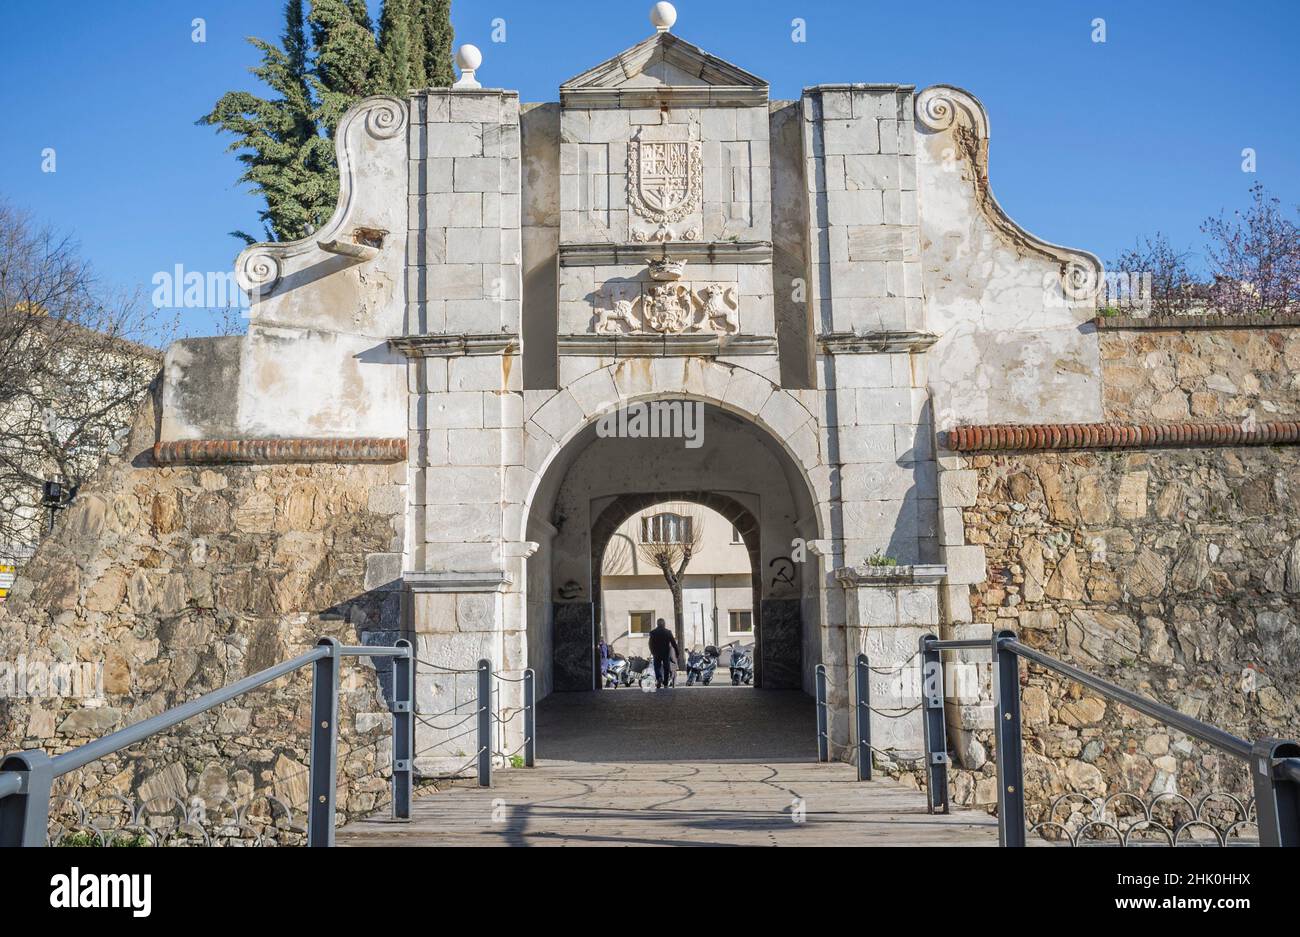 Pilar Gate oder Puerta Pilar, Badajoz, Extremadura, Spanien. Eingänge zu der befestigten Festung aus dem 17th. Jahrhundert. Stockfoto